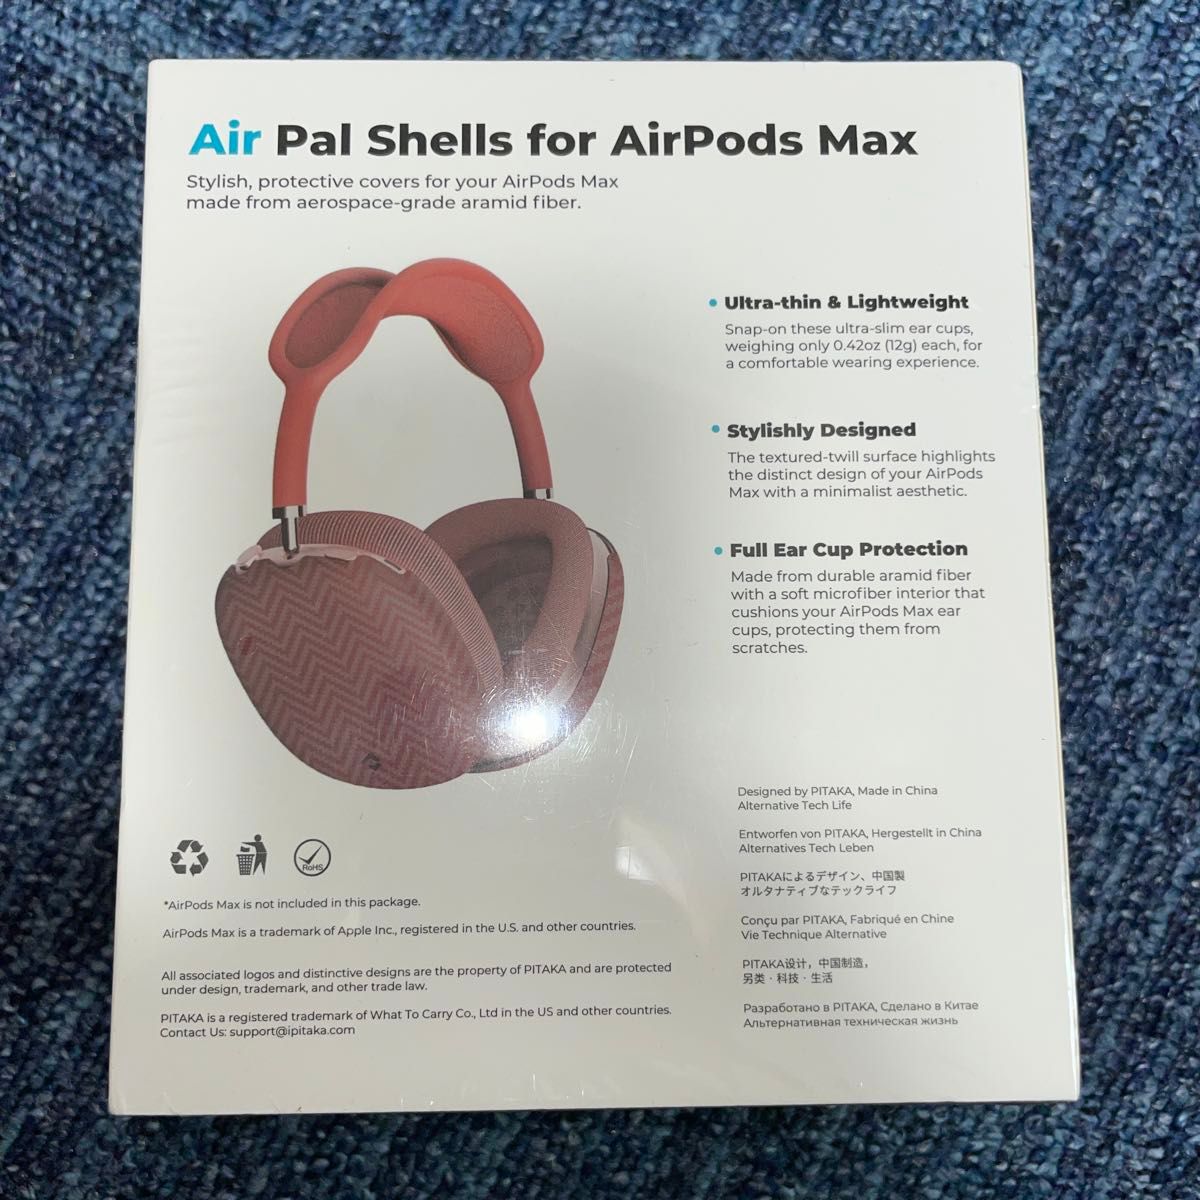 PITAKA Air Pal Shells for AirPods Max 